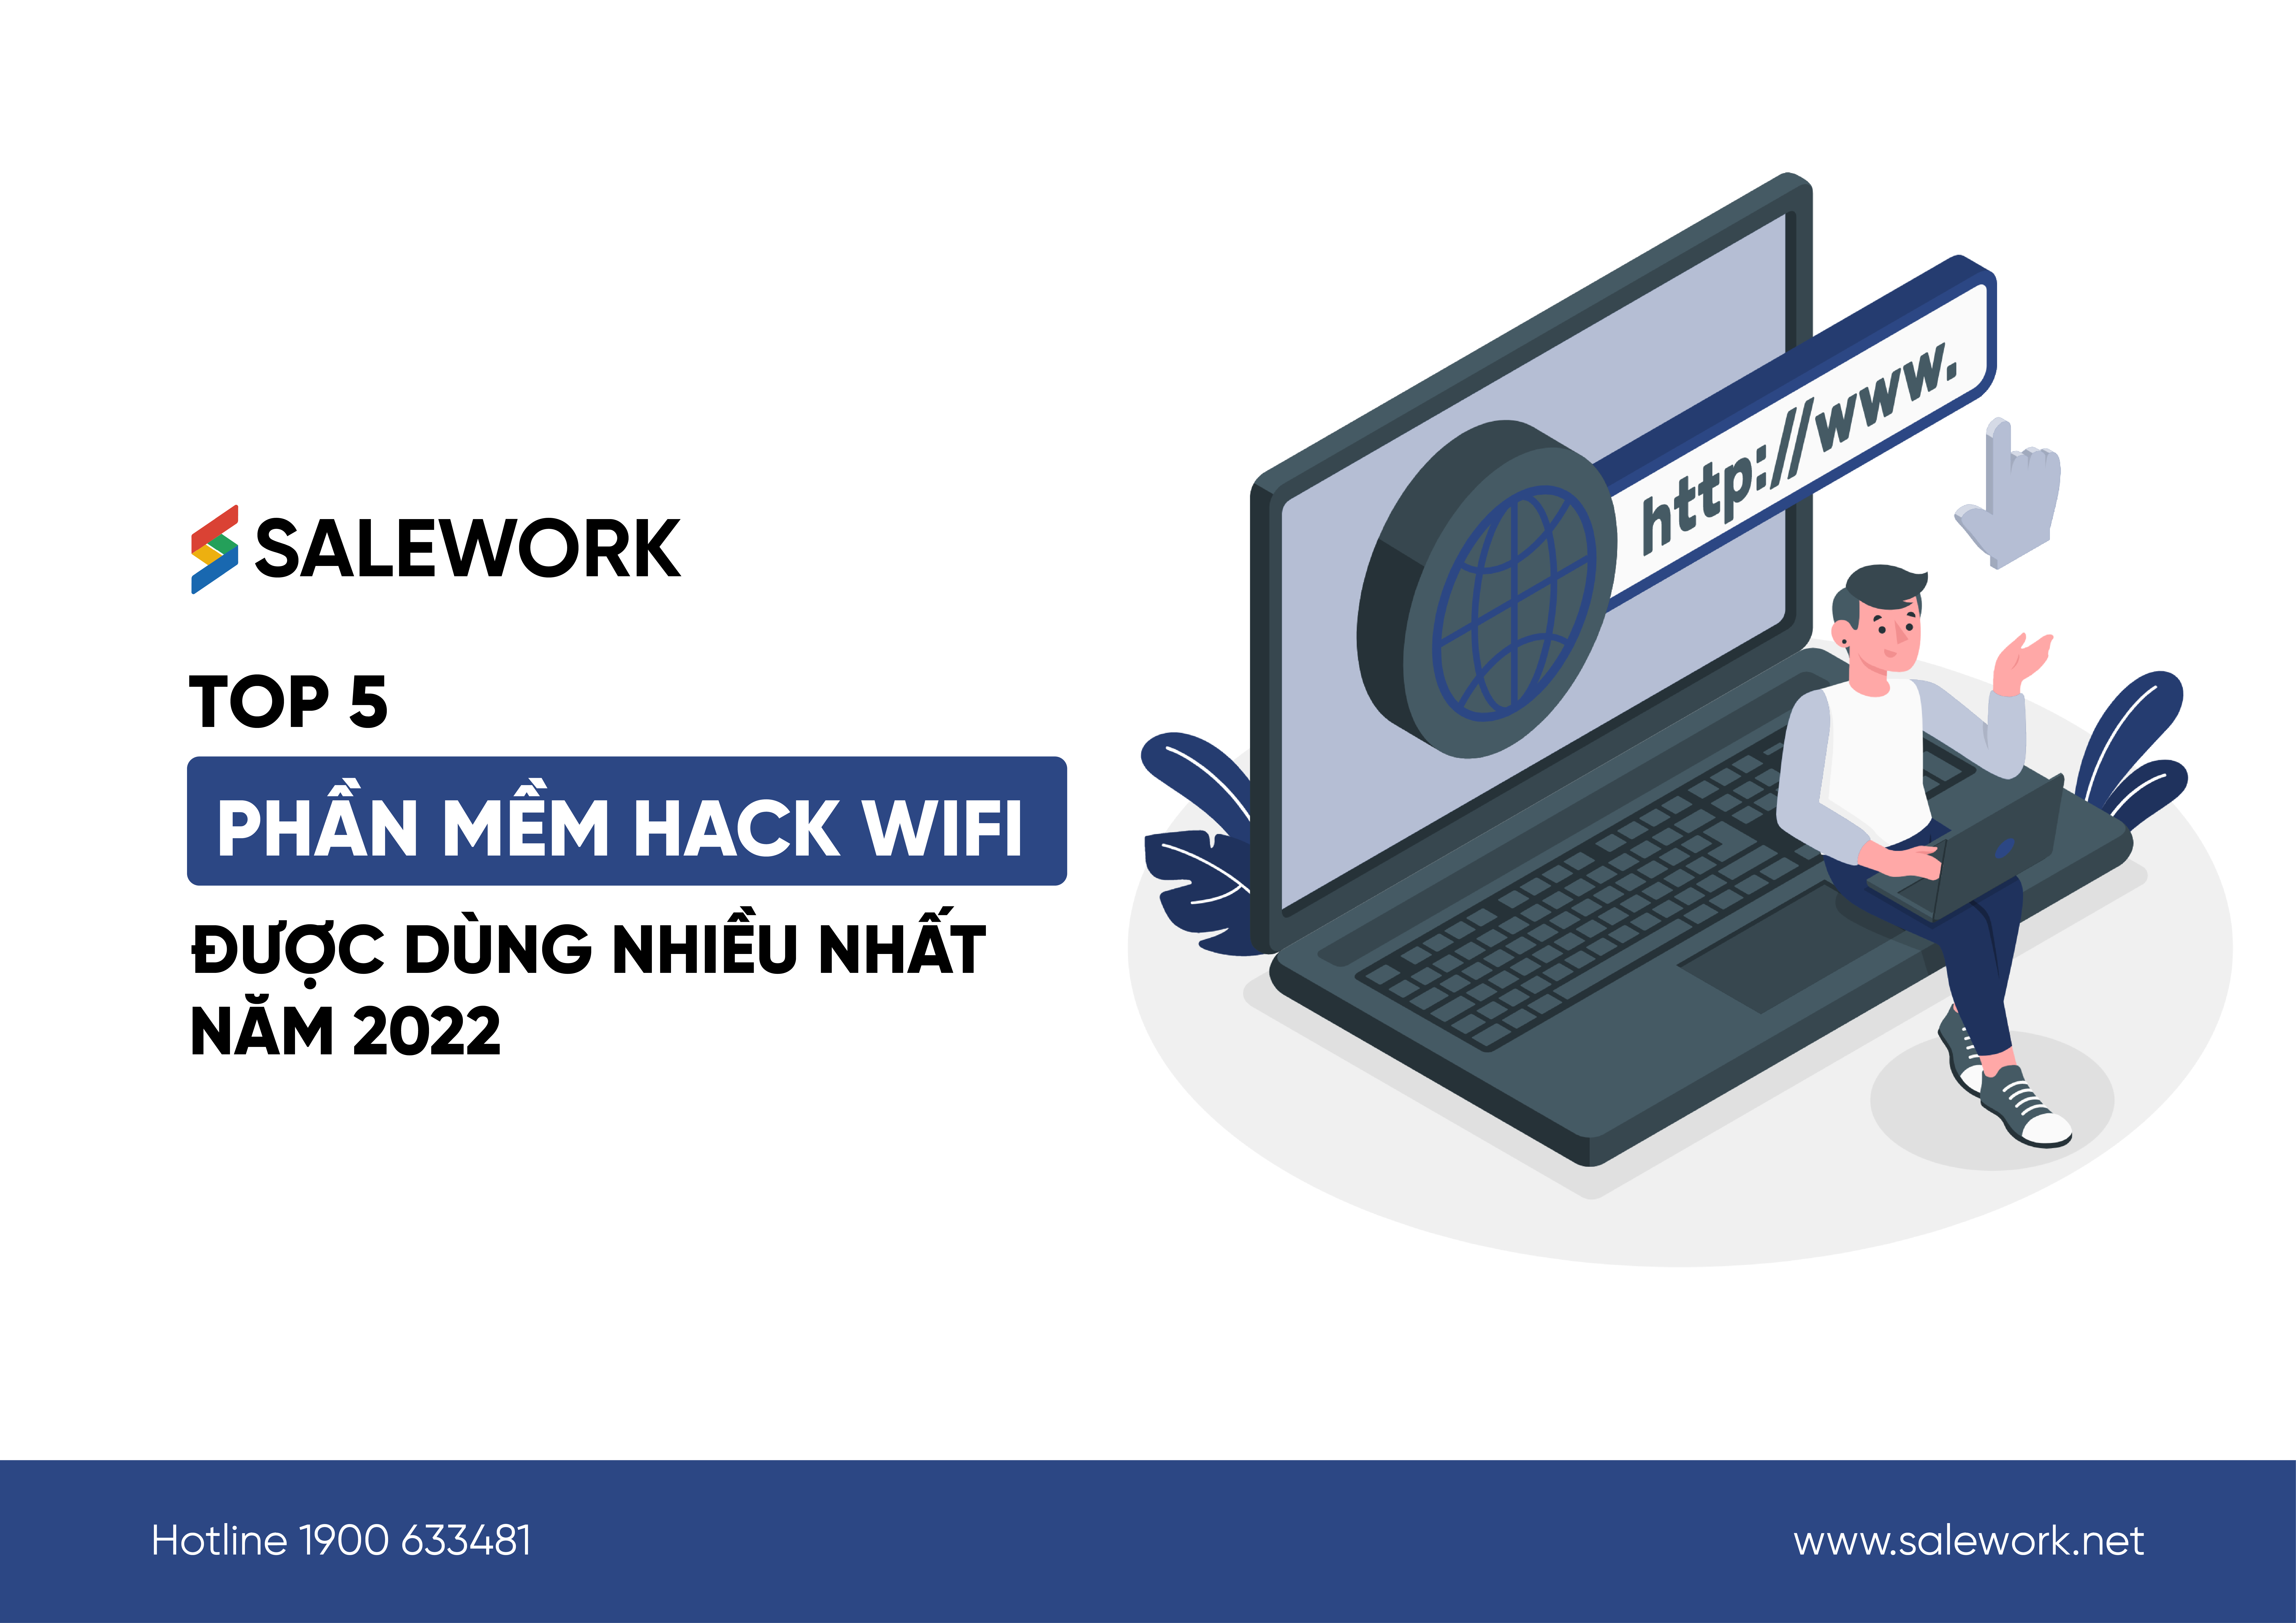 Top 5 Phần Mềm Hack Wifi Được Dùng Nhiều Nhất Năm 2023 - Salework